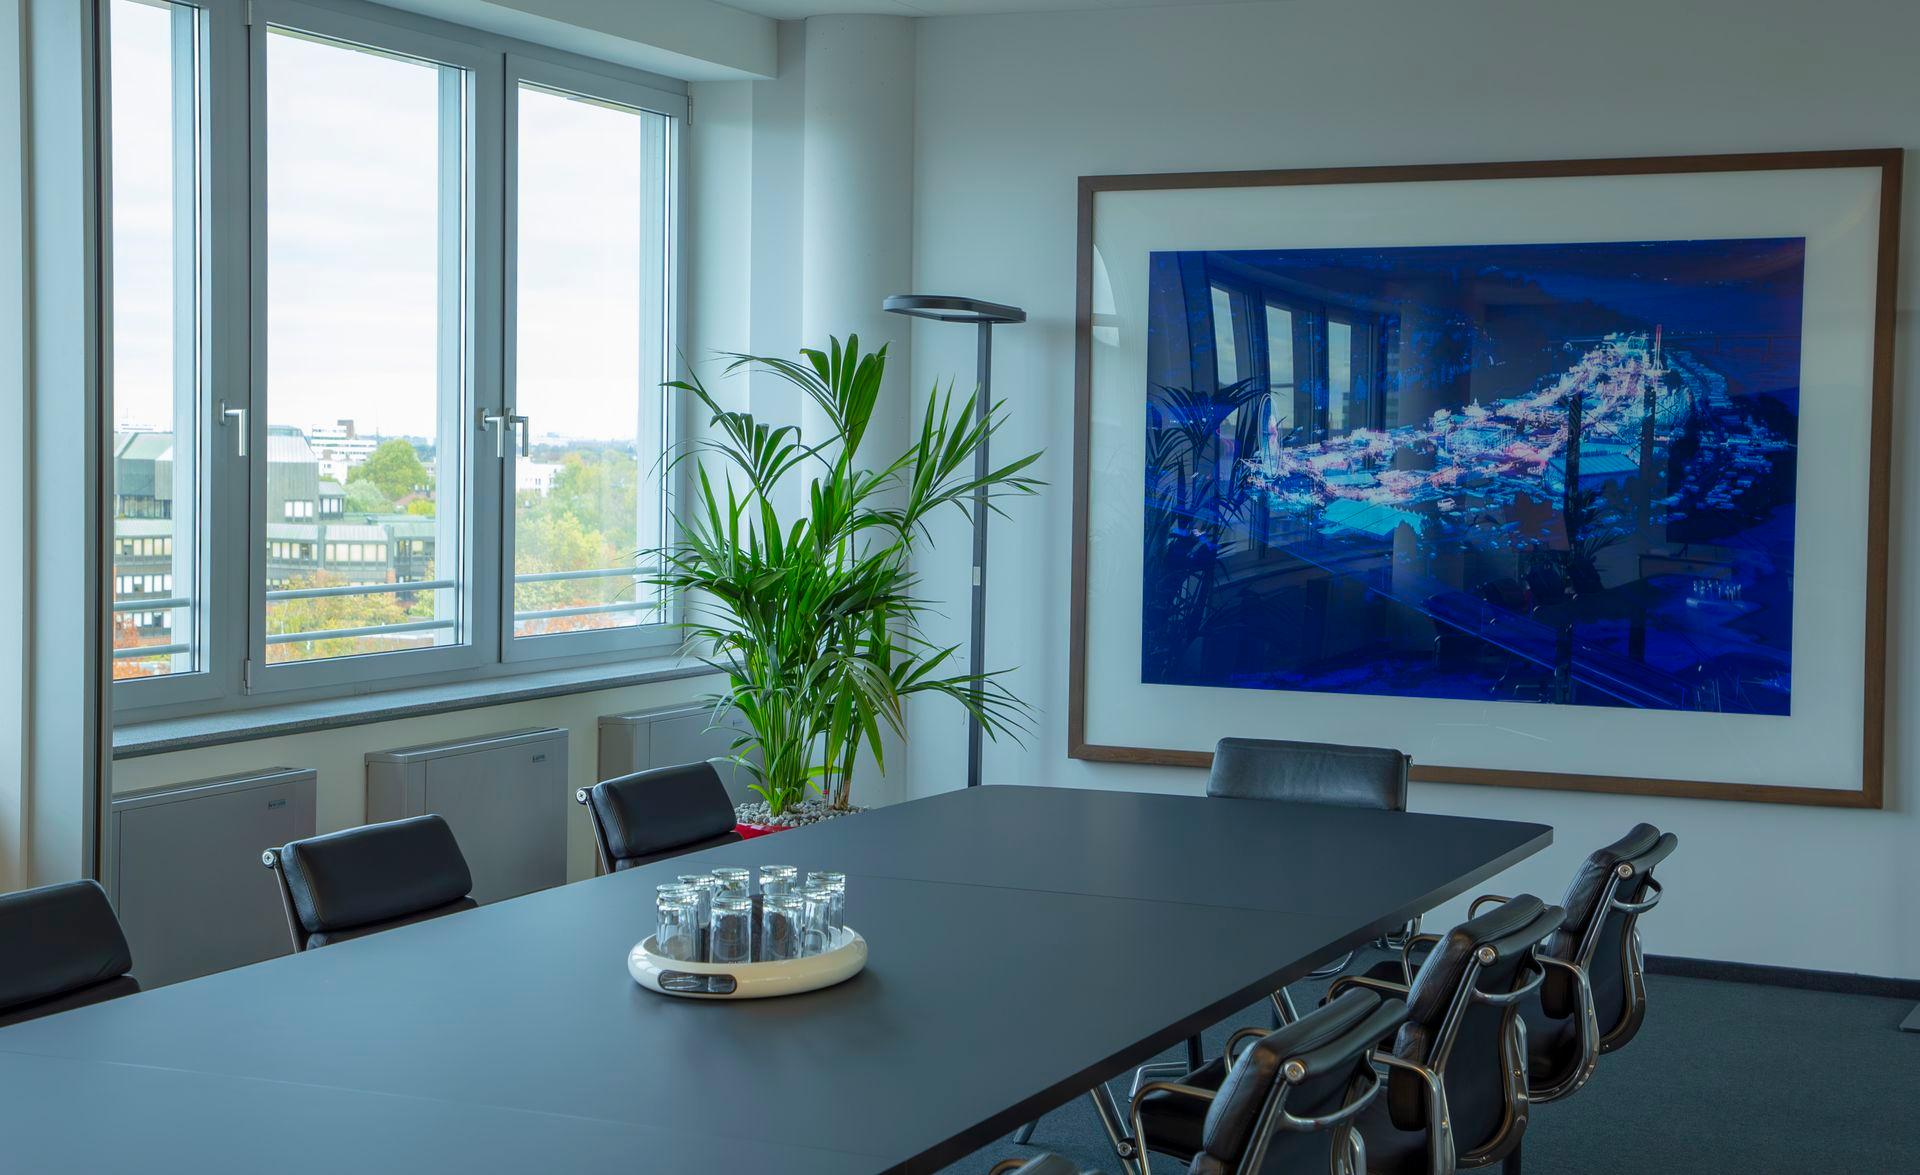 Besprechungsraum Düsseldorf 9 Etage mit riesigem blauen Bild an der Wand